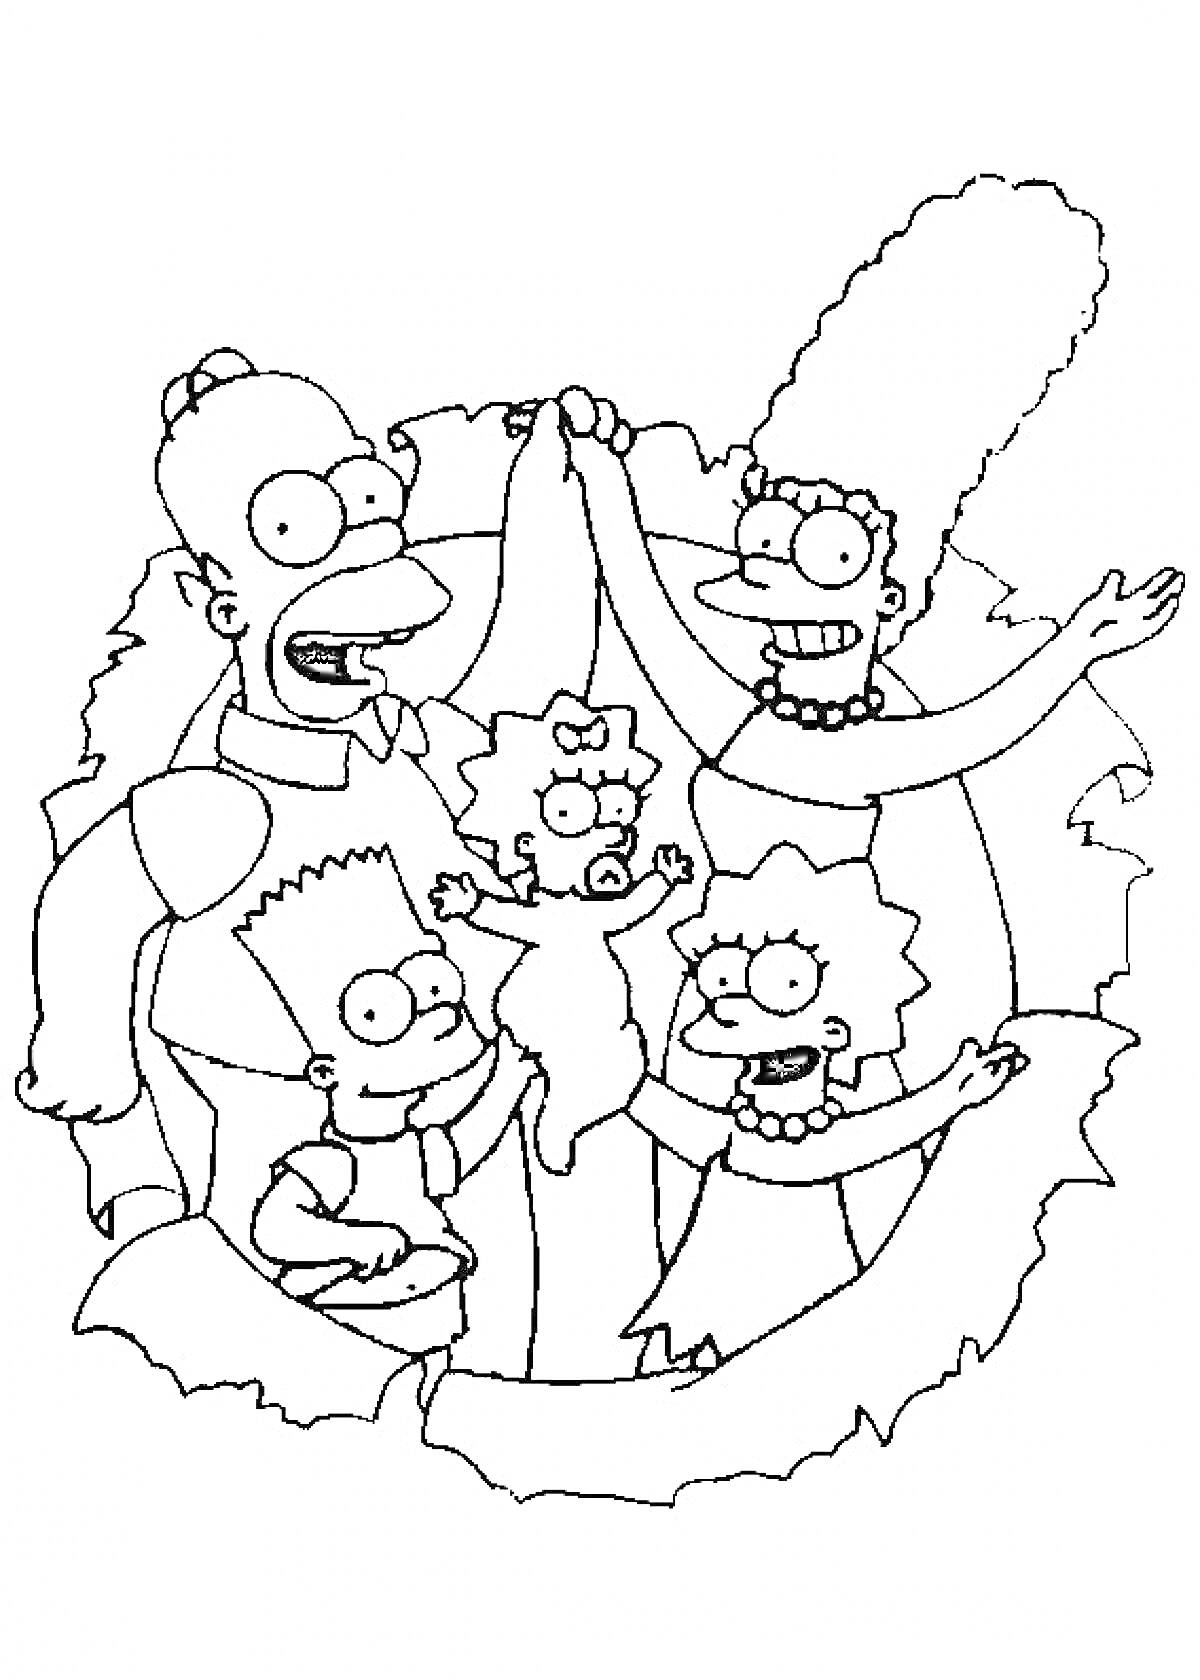 Раскраска Семья Симпсонов (Гомер, Мардж, Барт, Лиза и Мэгги), стоят вместе, держат друг друга за руки, фонетической формы